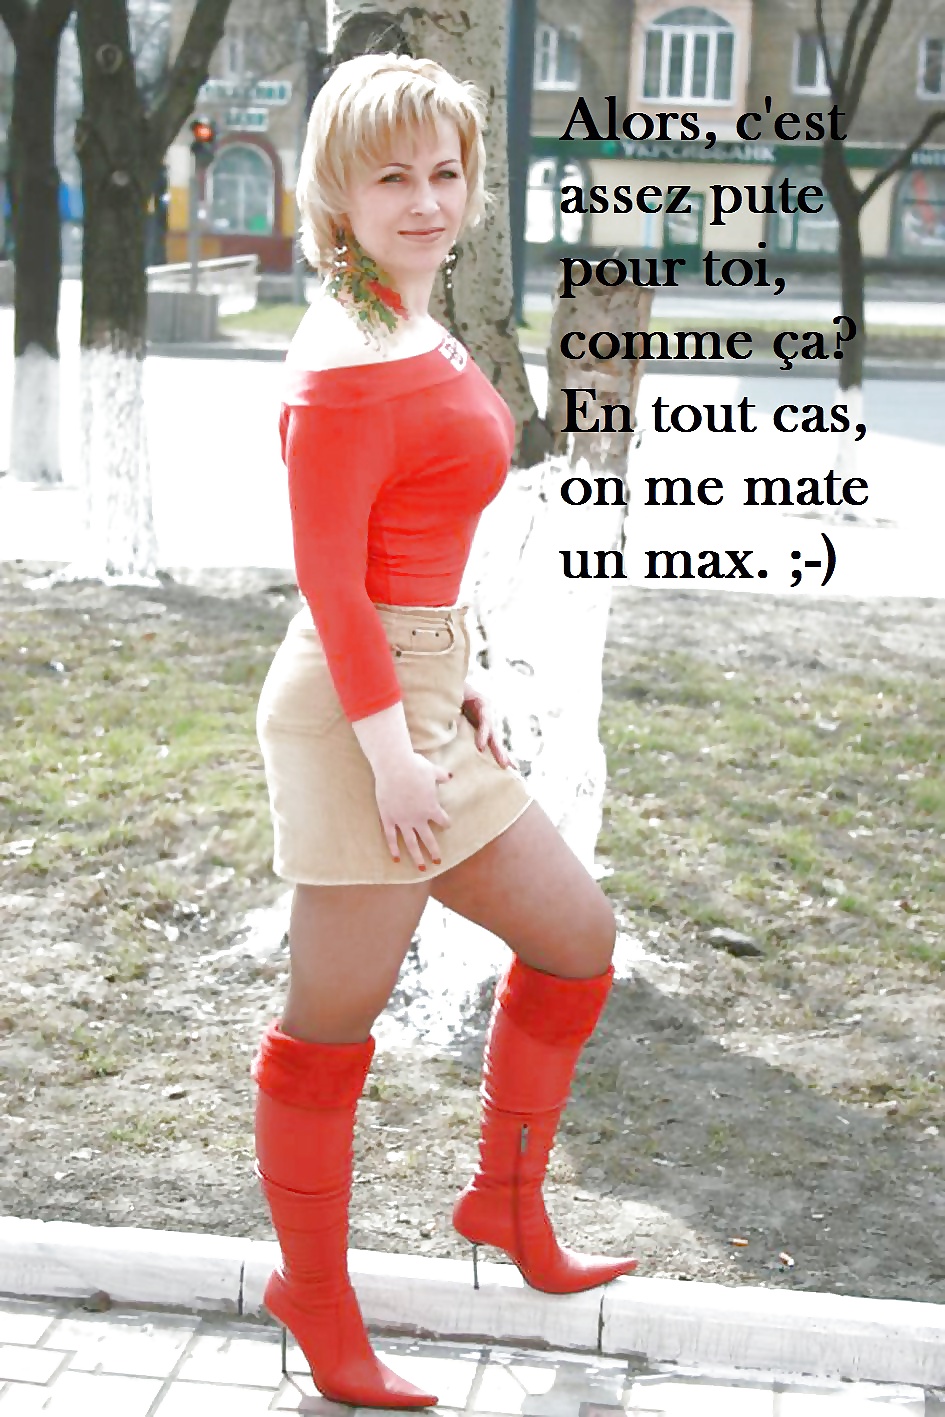 Legendes Cocu en francais (cuckold captions french) 4 #38842748